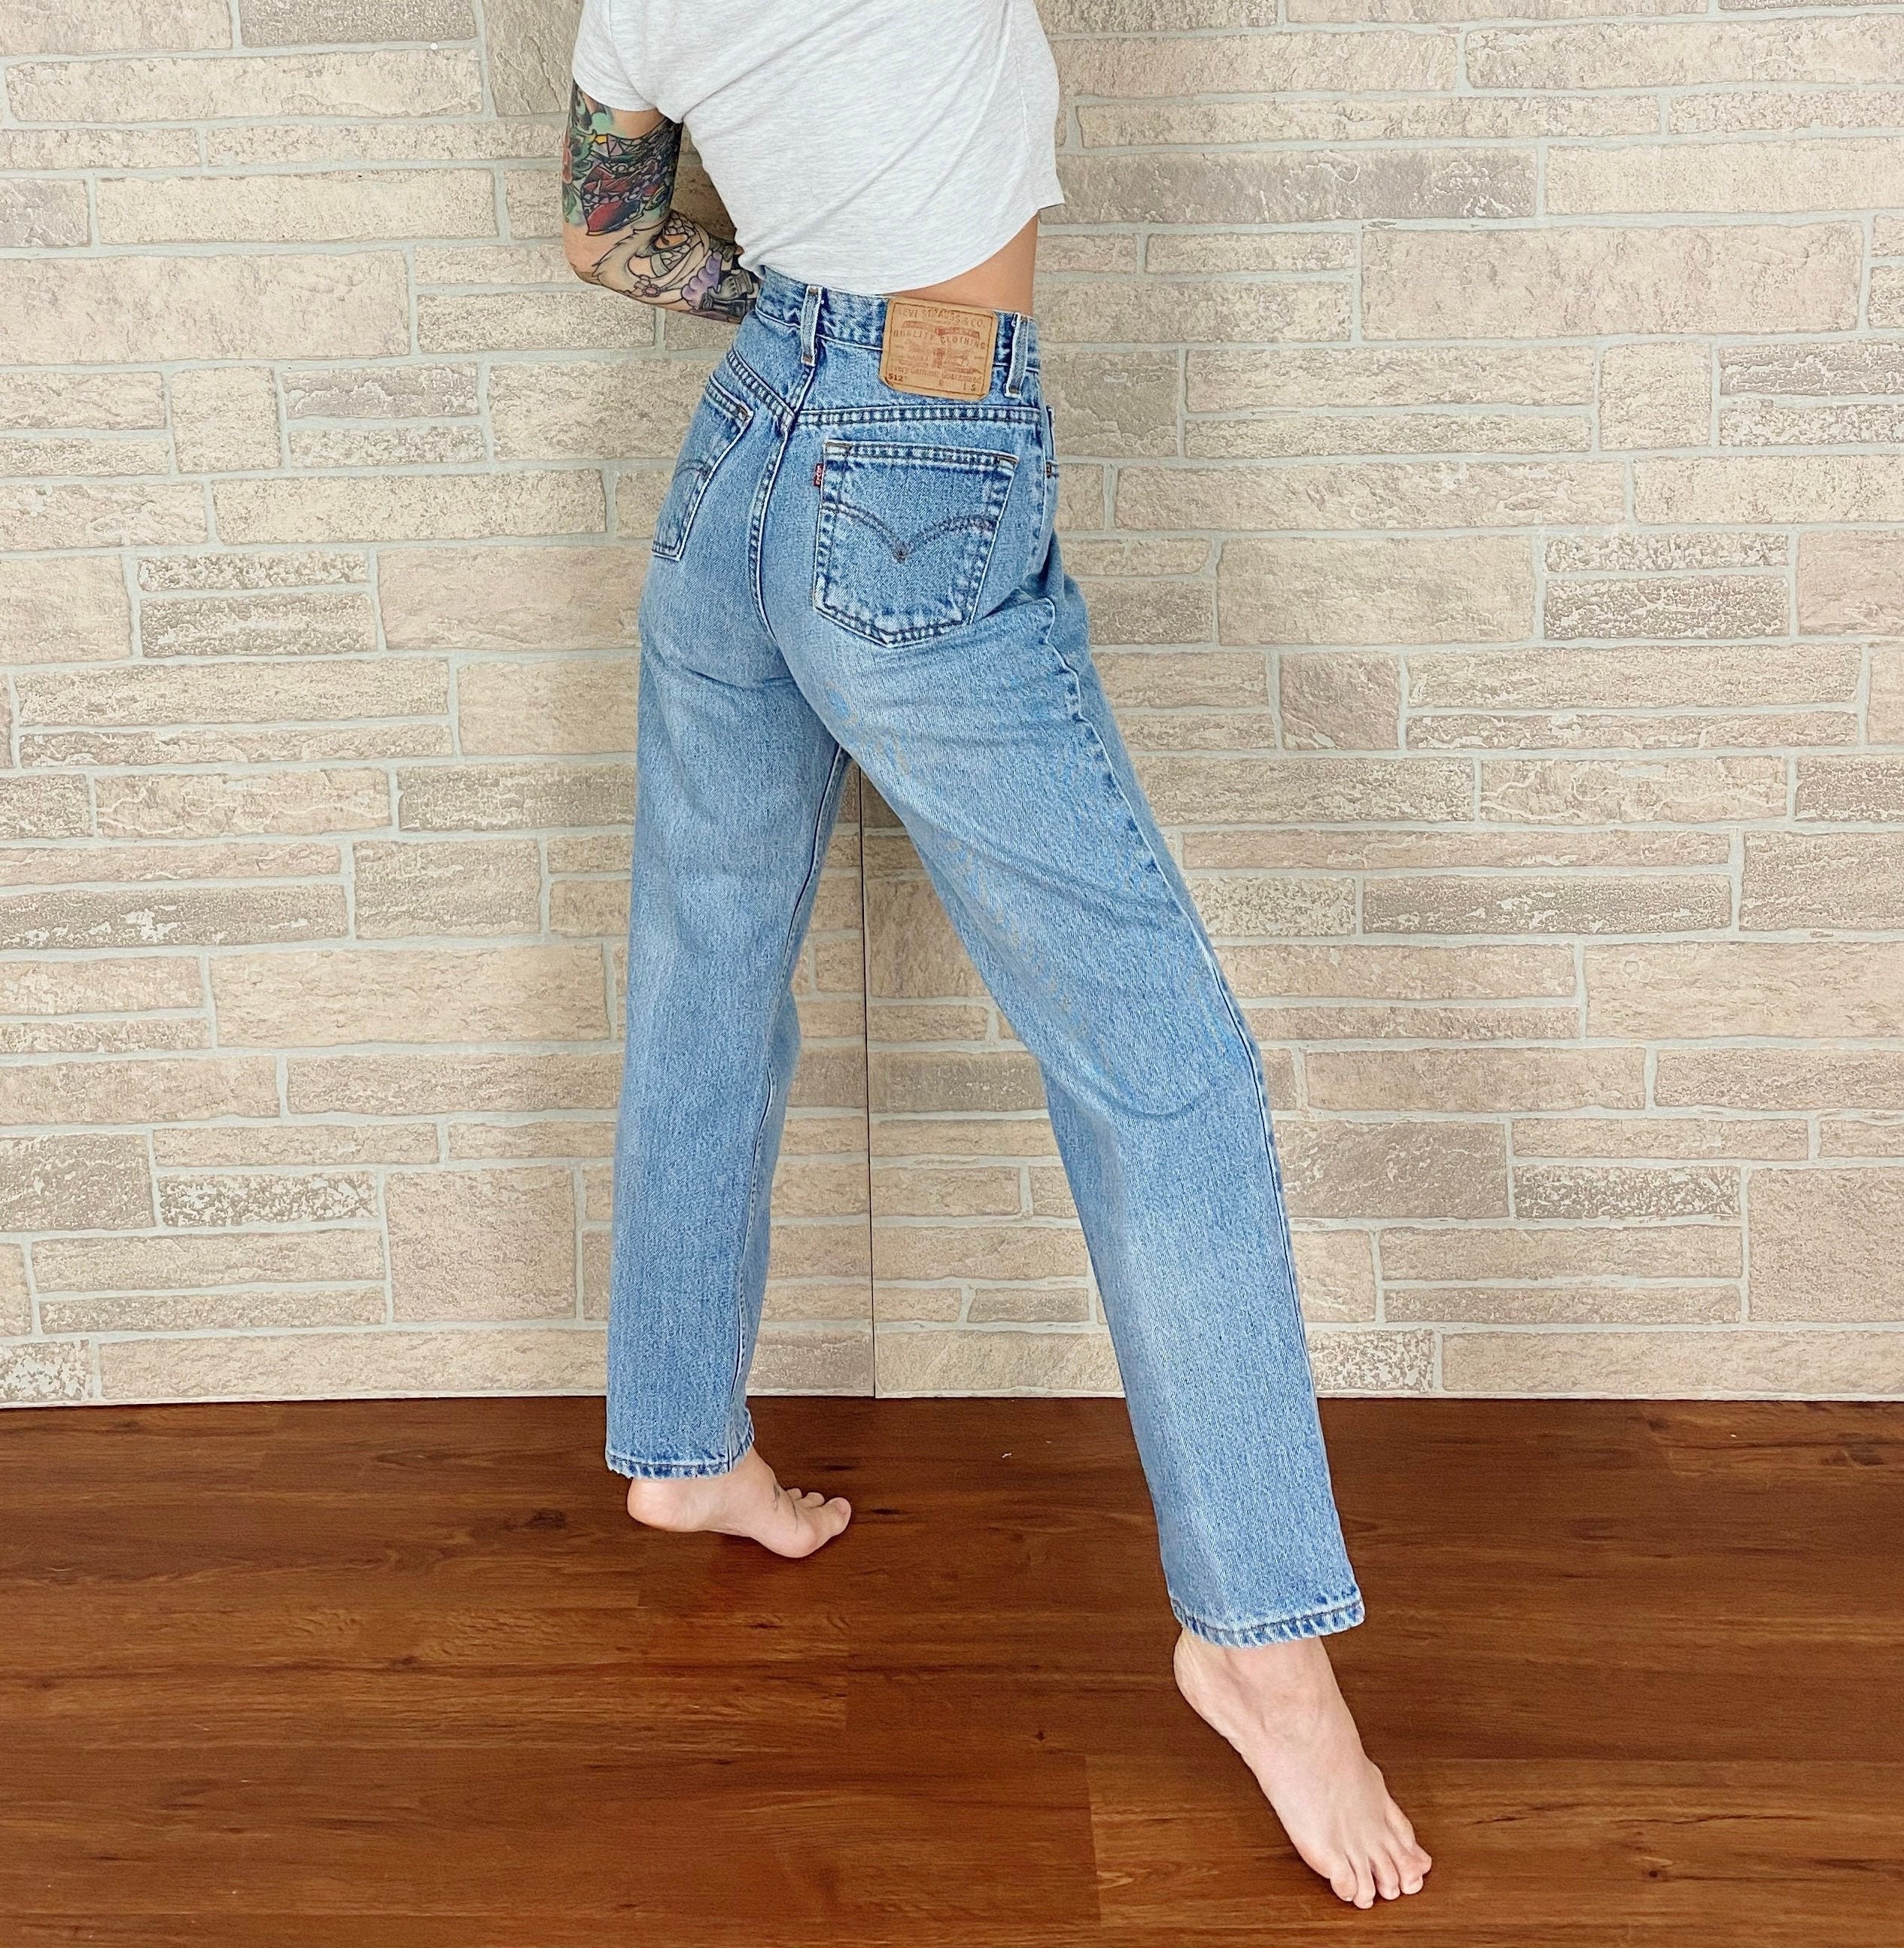 Levi's 512 Vintage Jeans / Size 28